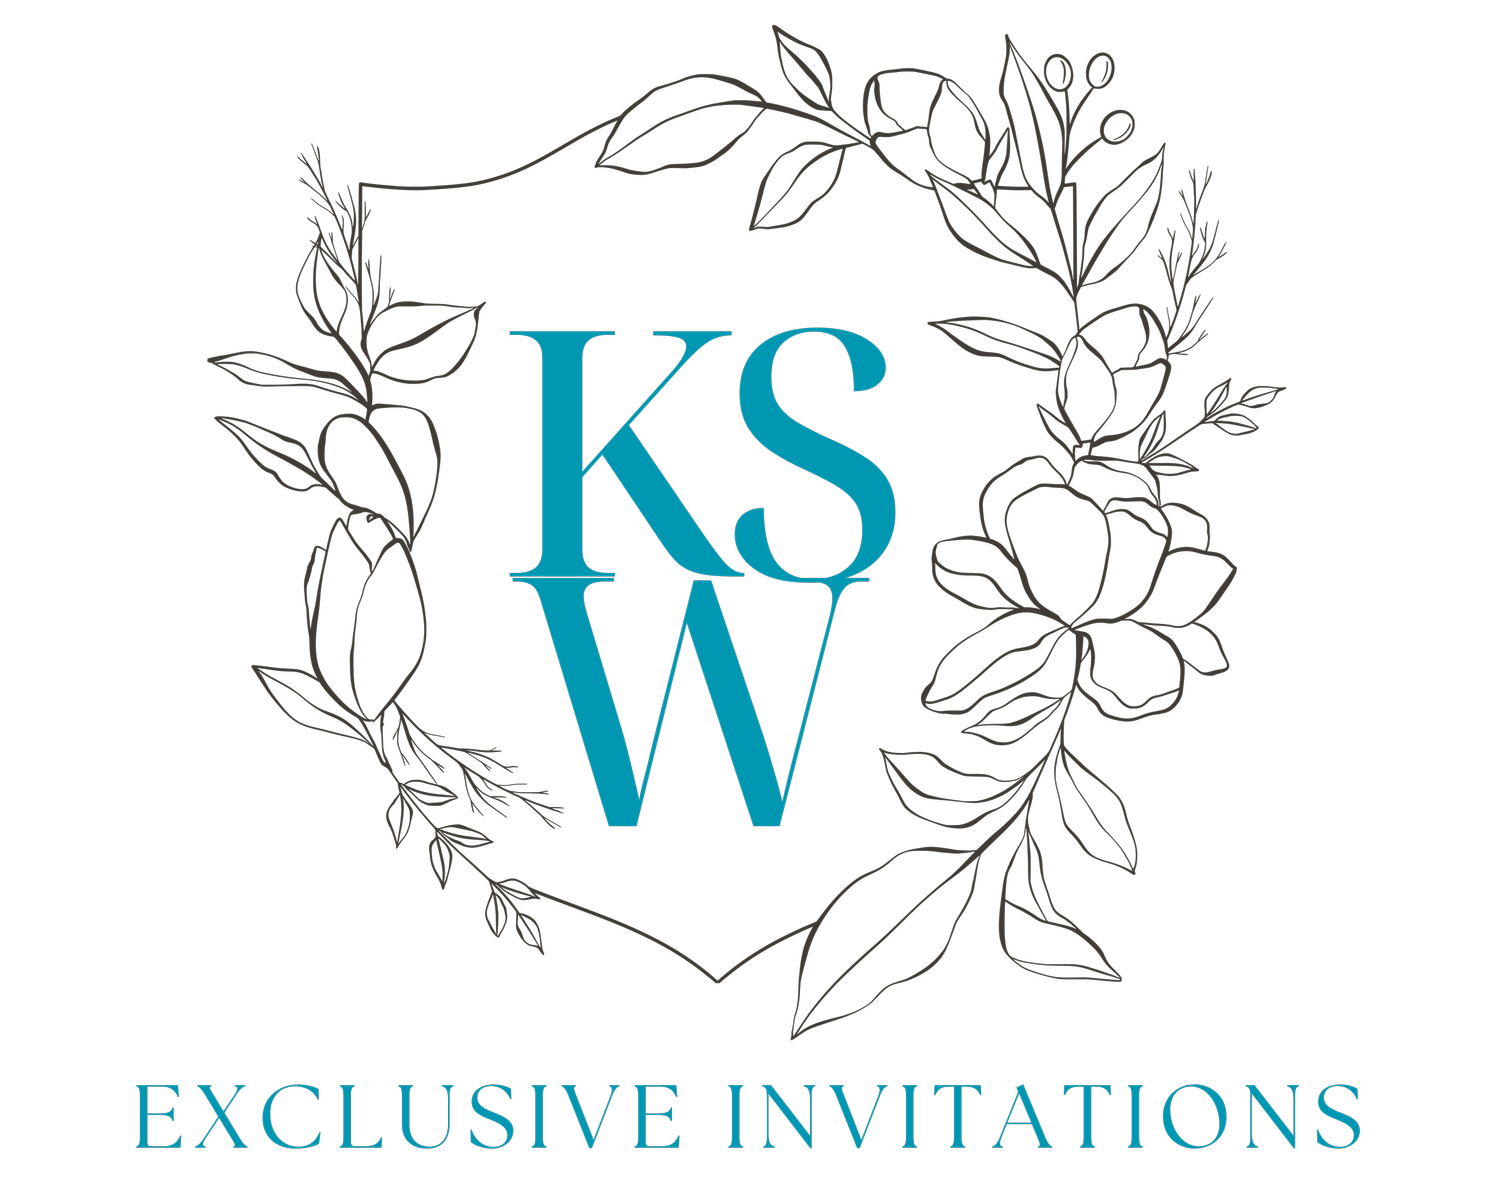 KSW Exclusive Invitations